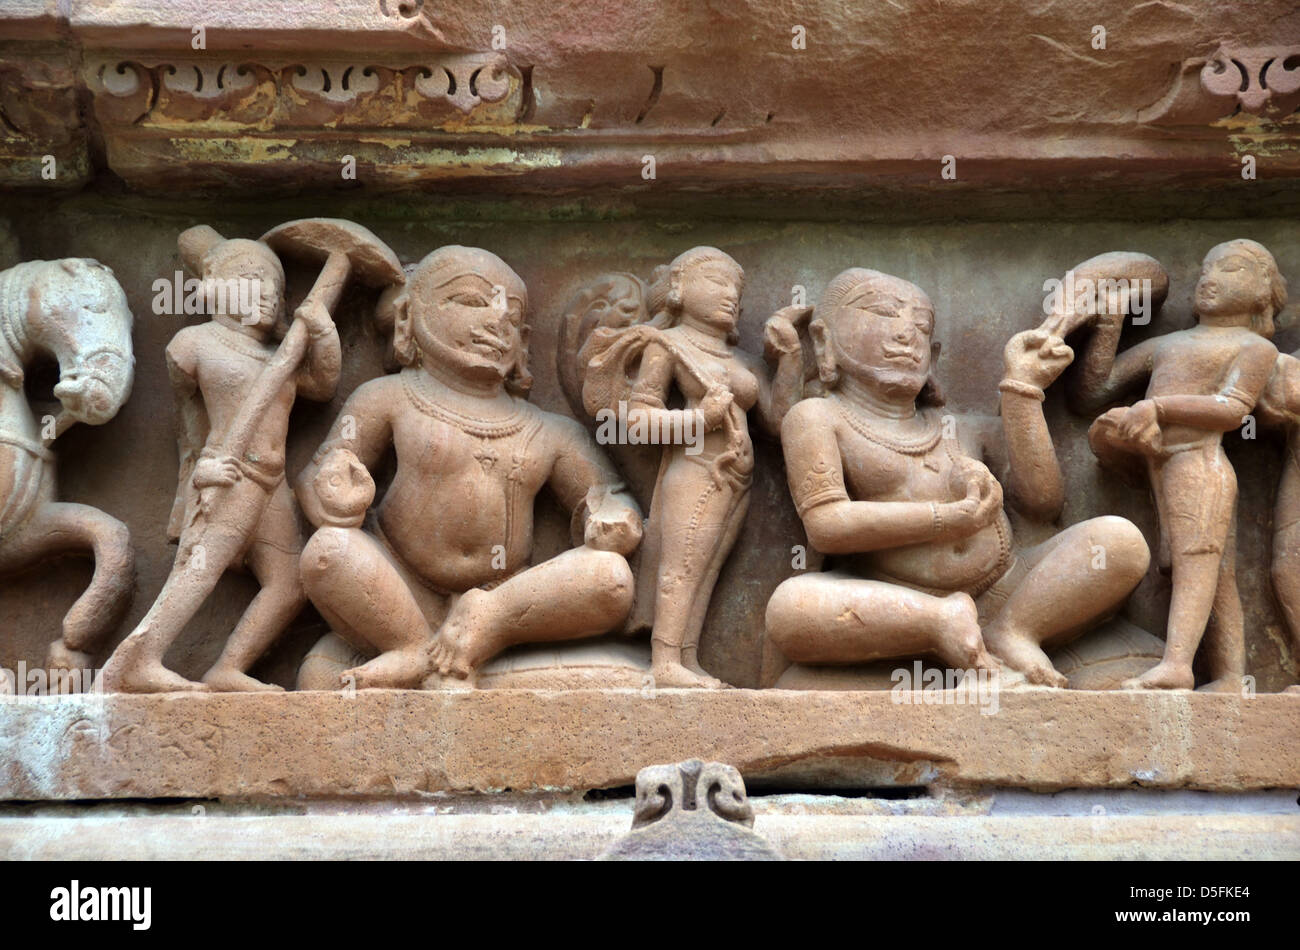 Carvings on temple walls at Khajuraho Stock Photo